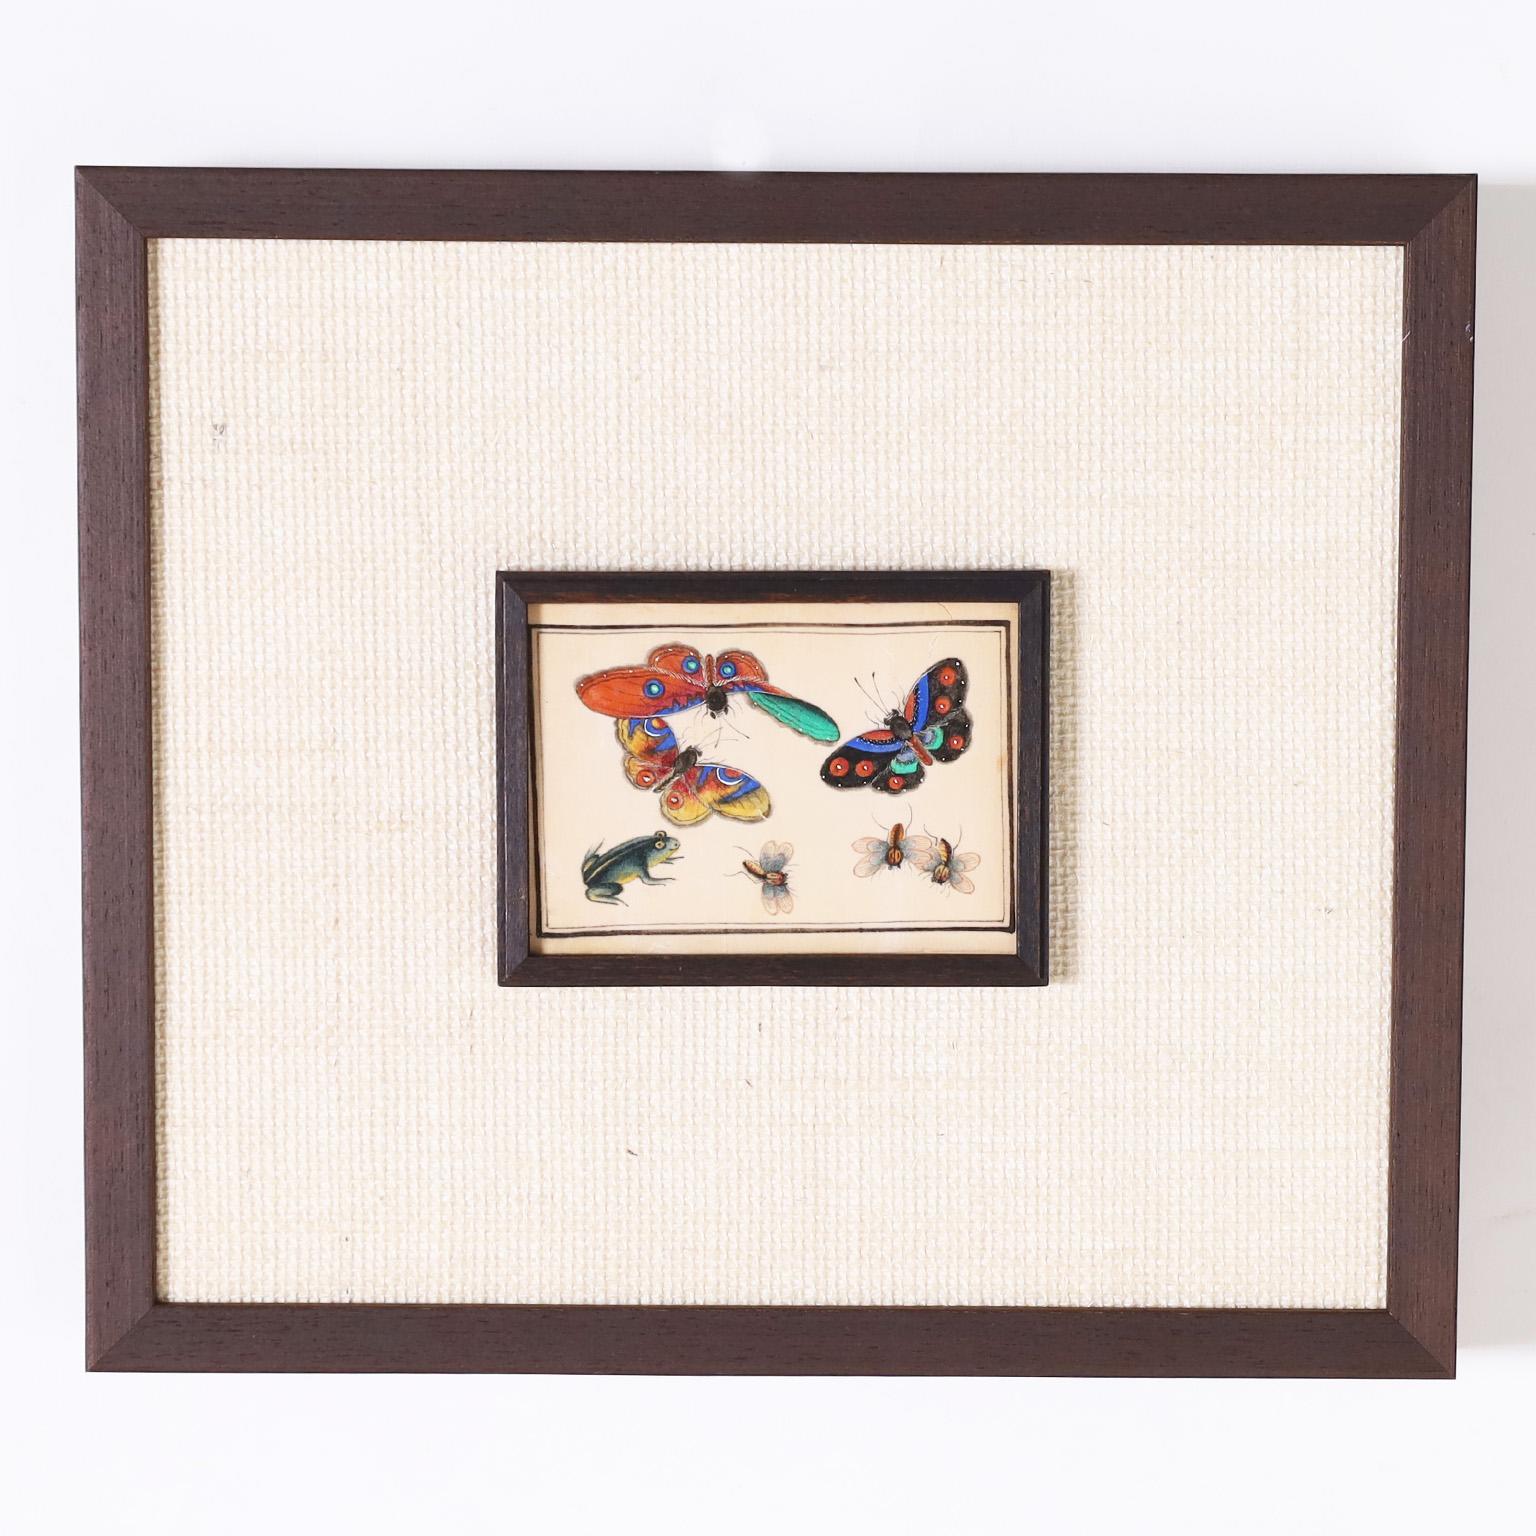 Rare et remarquable ensemble de douze aquarelles chinoises du XIXe siècle sur papier à moelle, représentant des espèces de papillons de nuit et d'autres insectes, exécutées dans des couleurs vives et glorieuses. Présenté sous verre dans un cadre à